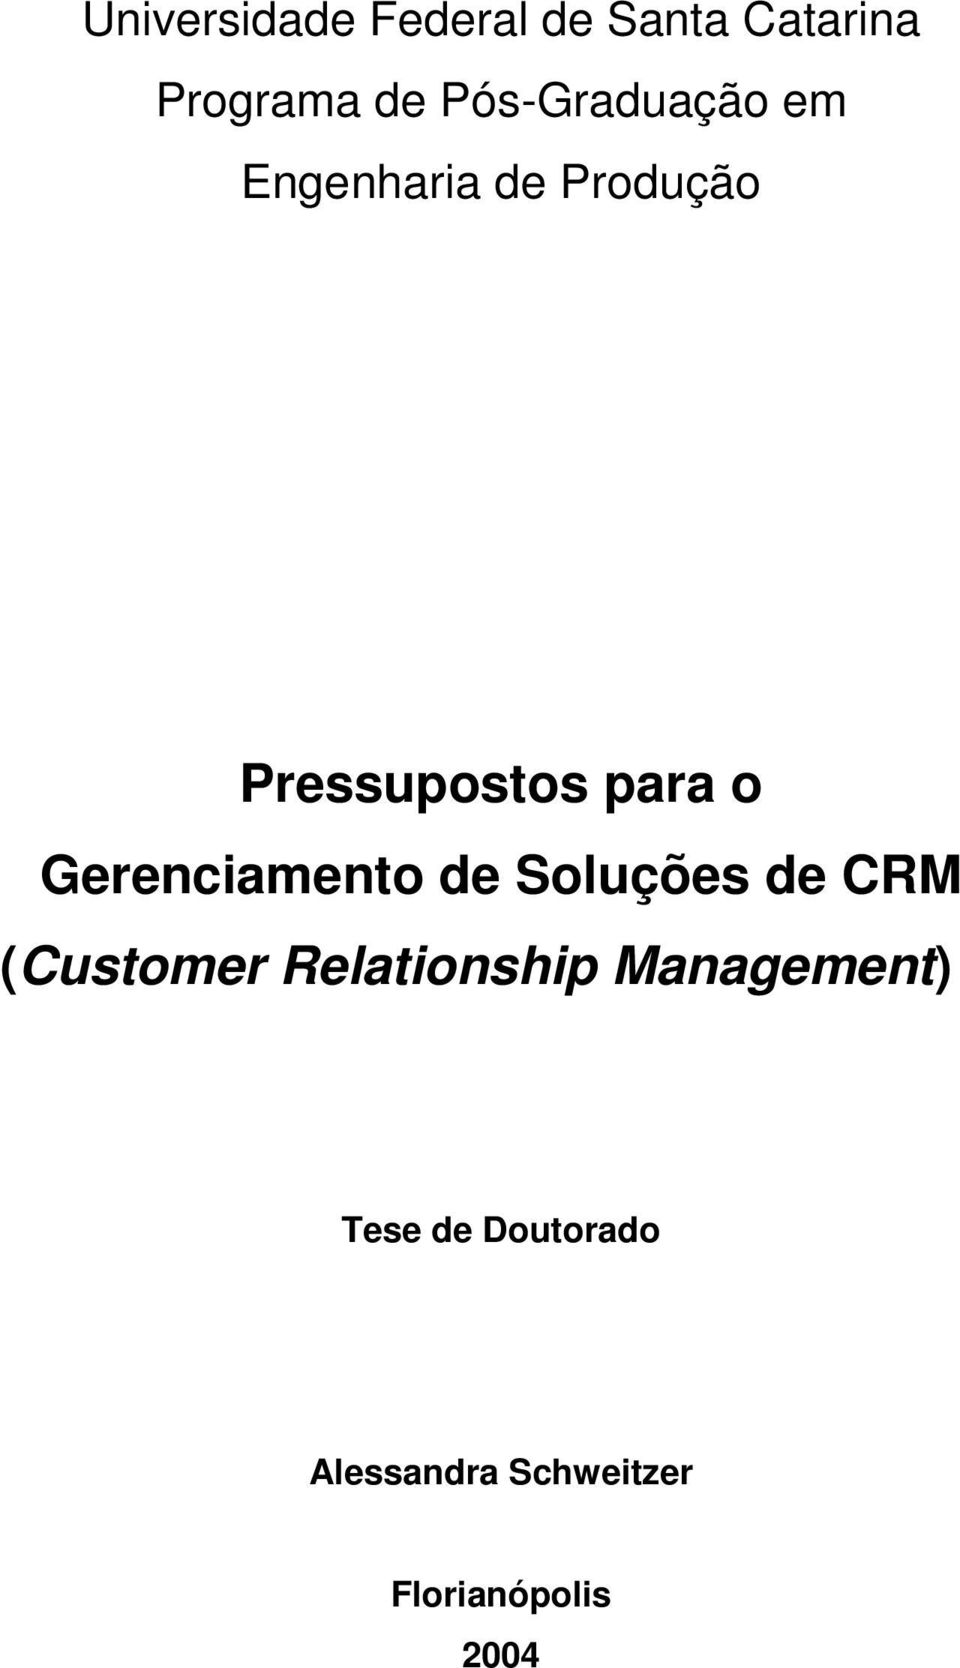 Gerenciamento de Soluções de CRM (Customer Relationship